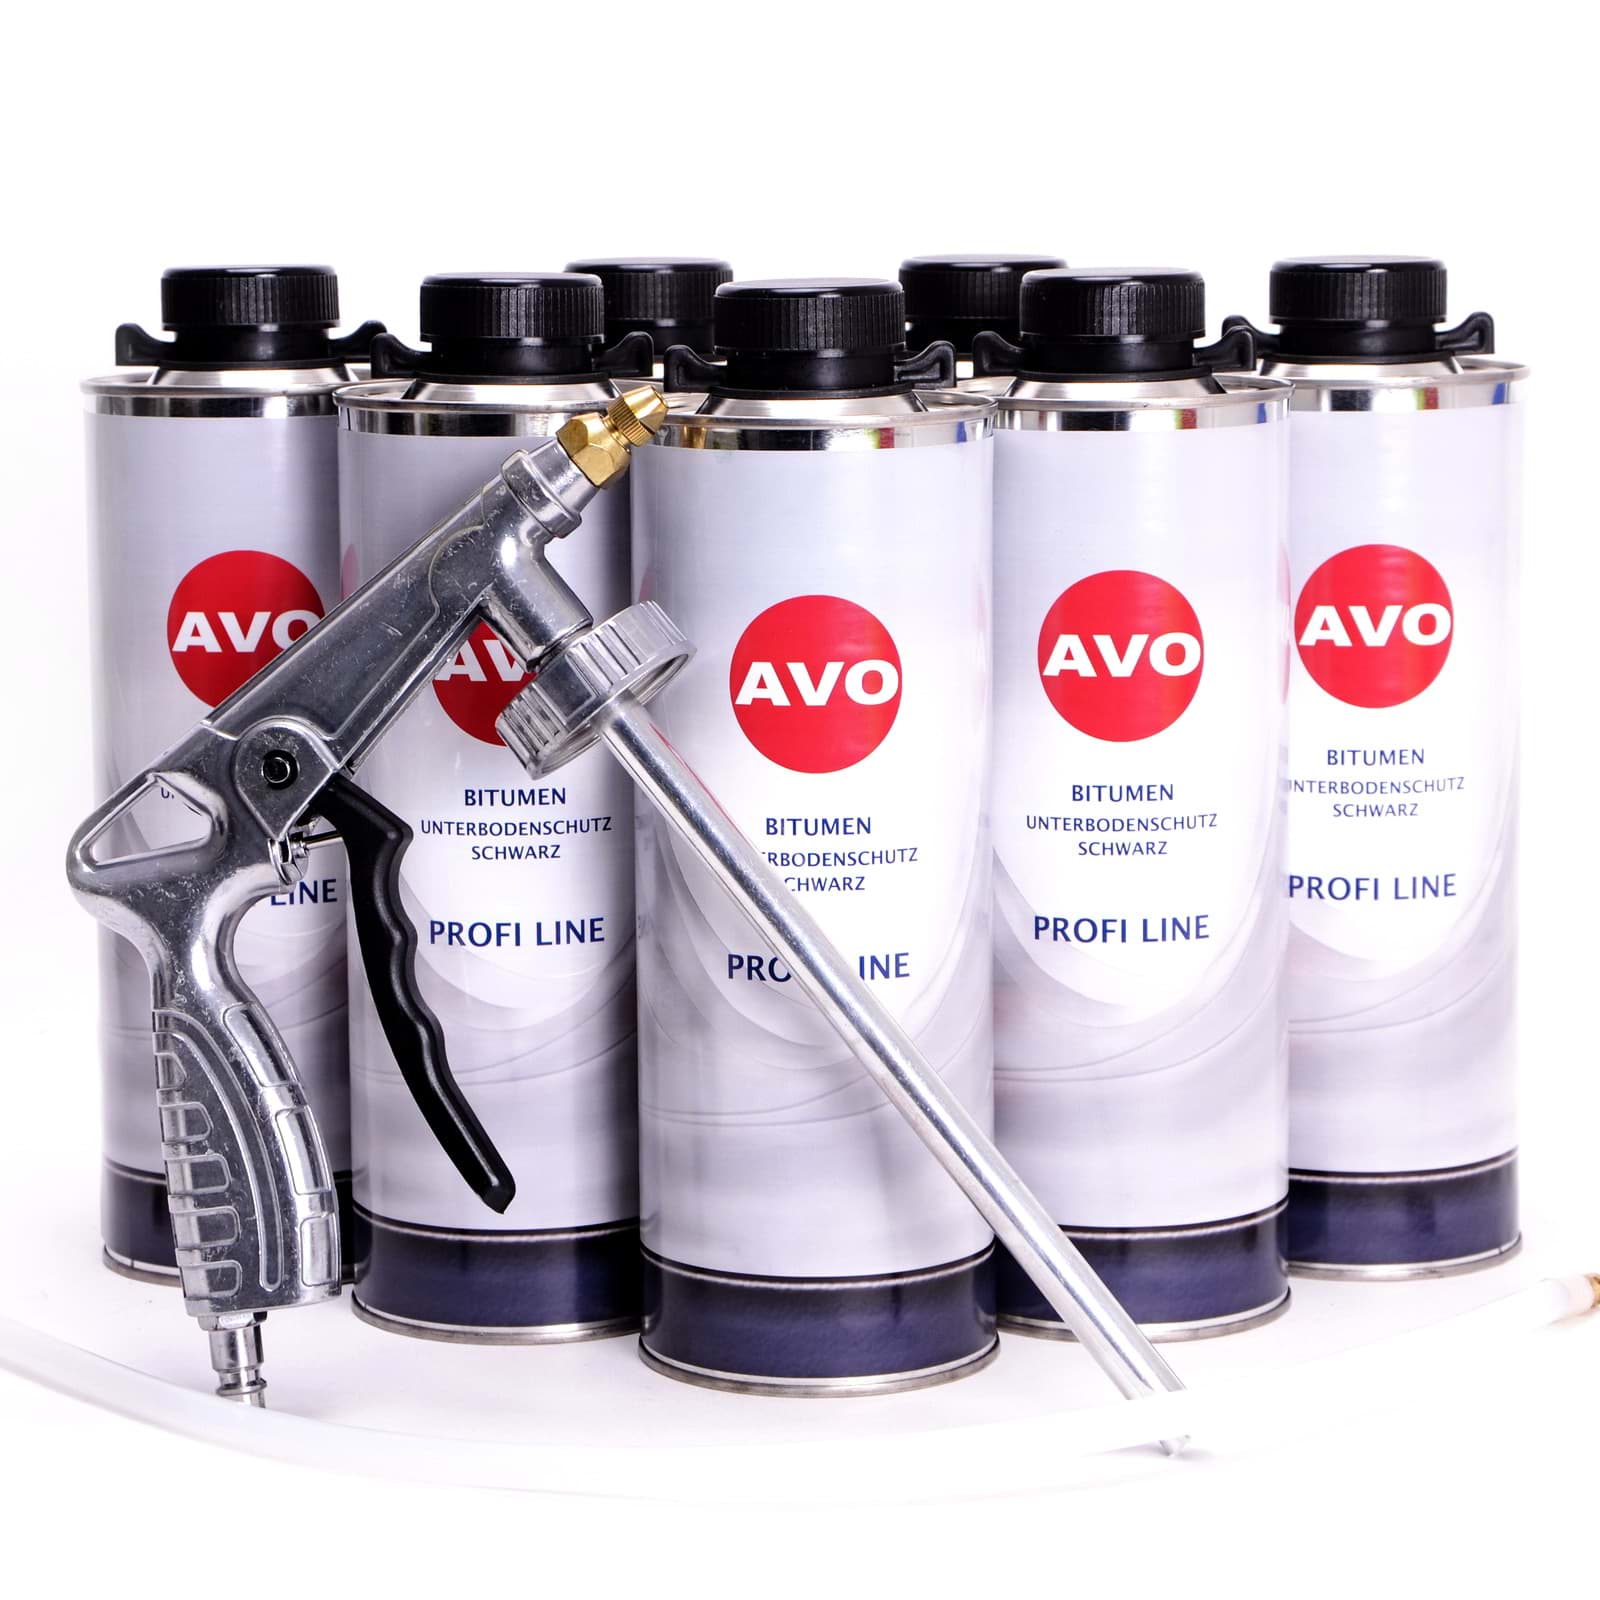 AVO 6 Liter Unterbodenschutz Bitumen schwarz + UBS/HV Spritzpistole